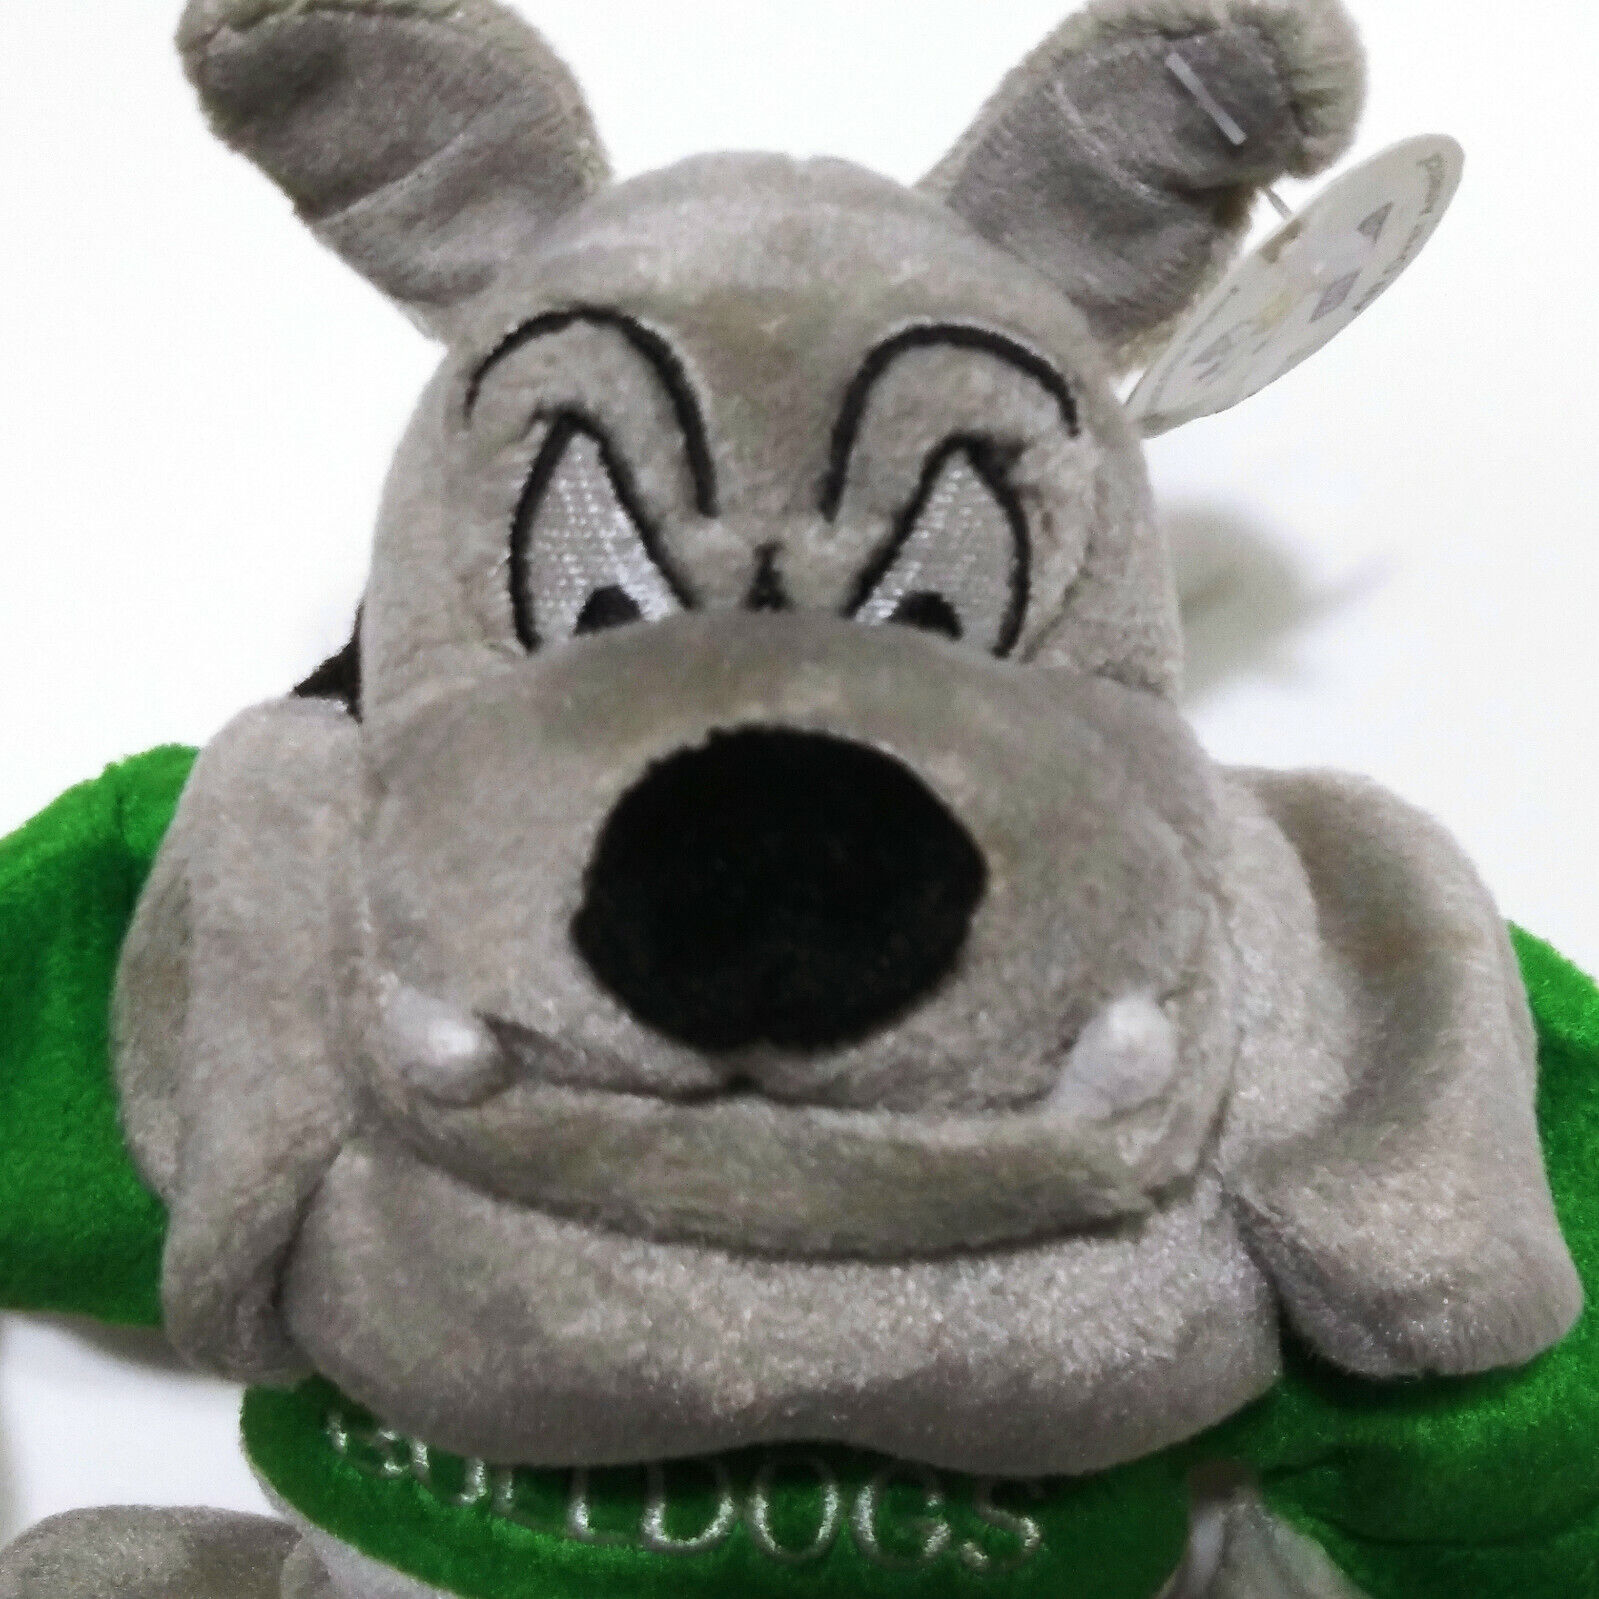 Go Bulldogss Mascot K-12 Mascots Plush, Green White - Limited Edition Rare 10\